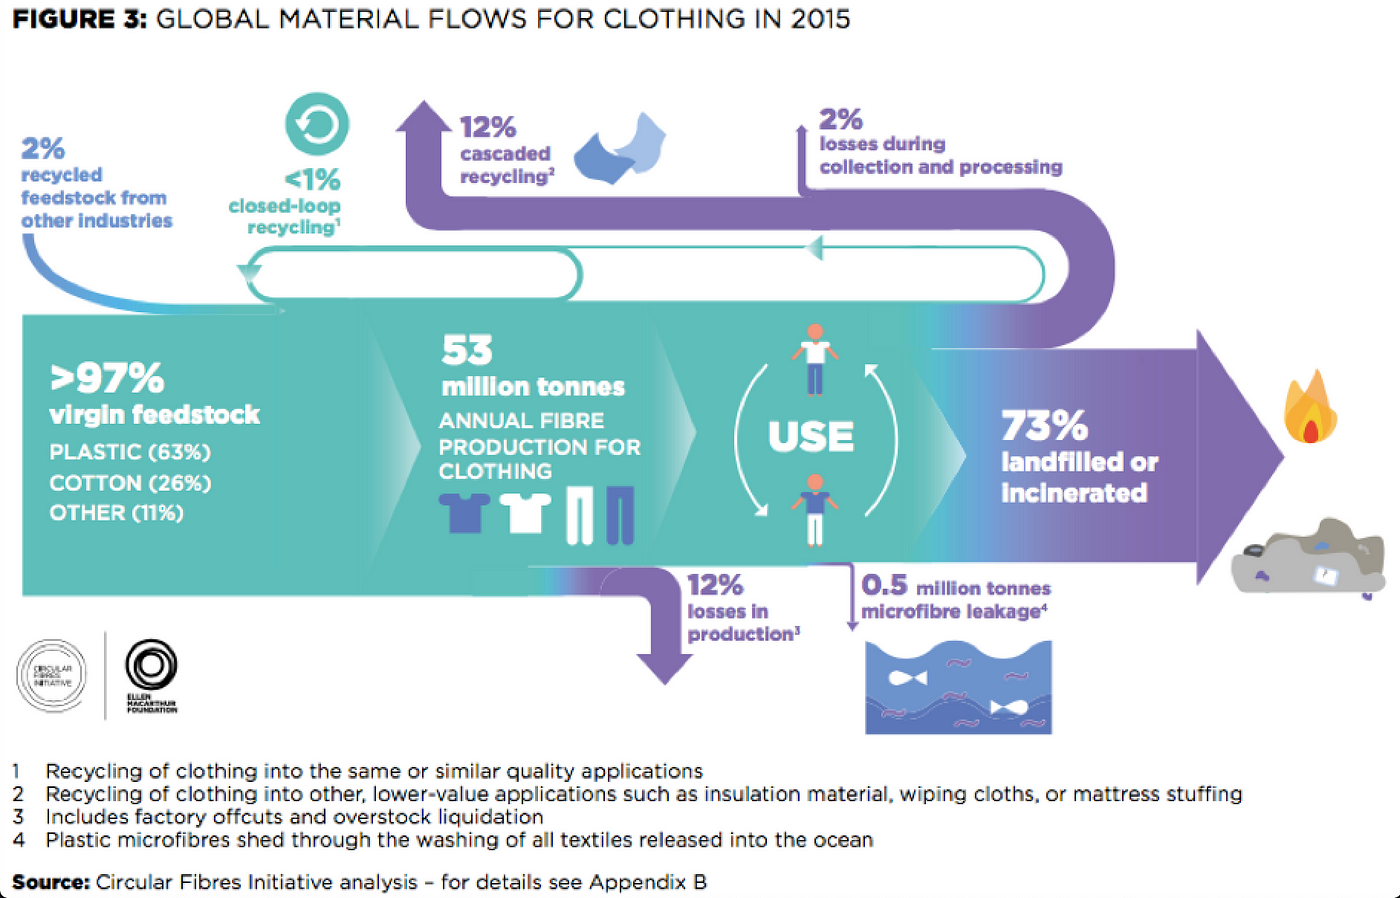 Comment pourrions-nous améliorer la chaine de production du textile afin  réduire l'impact environnementale ? | by Matthis Nho | Medium